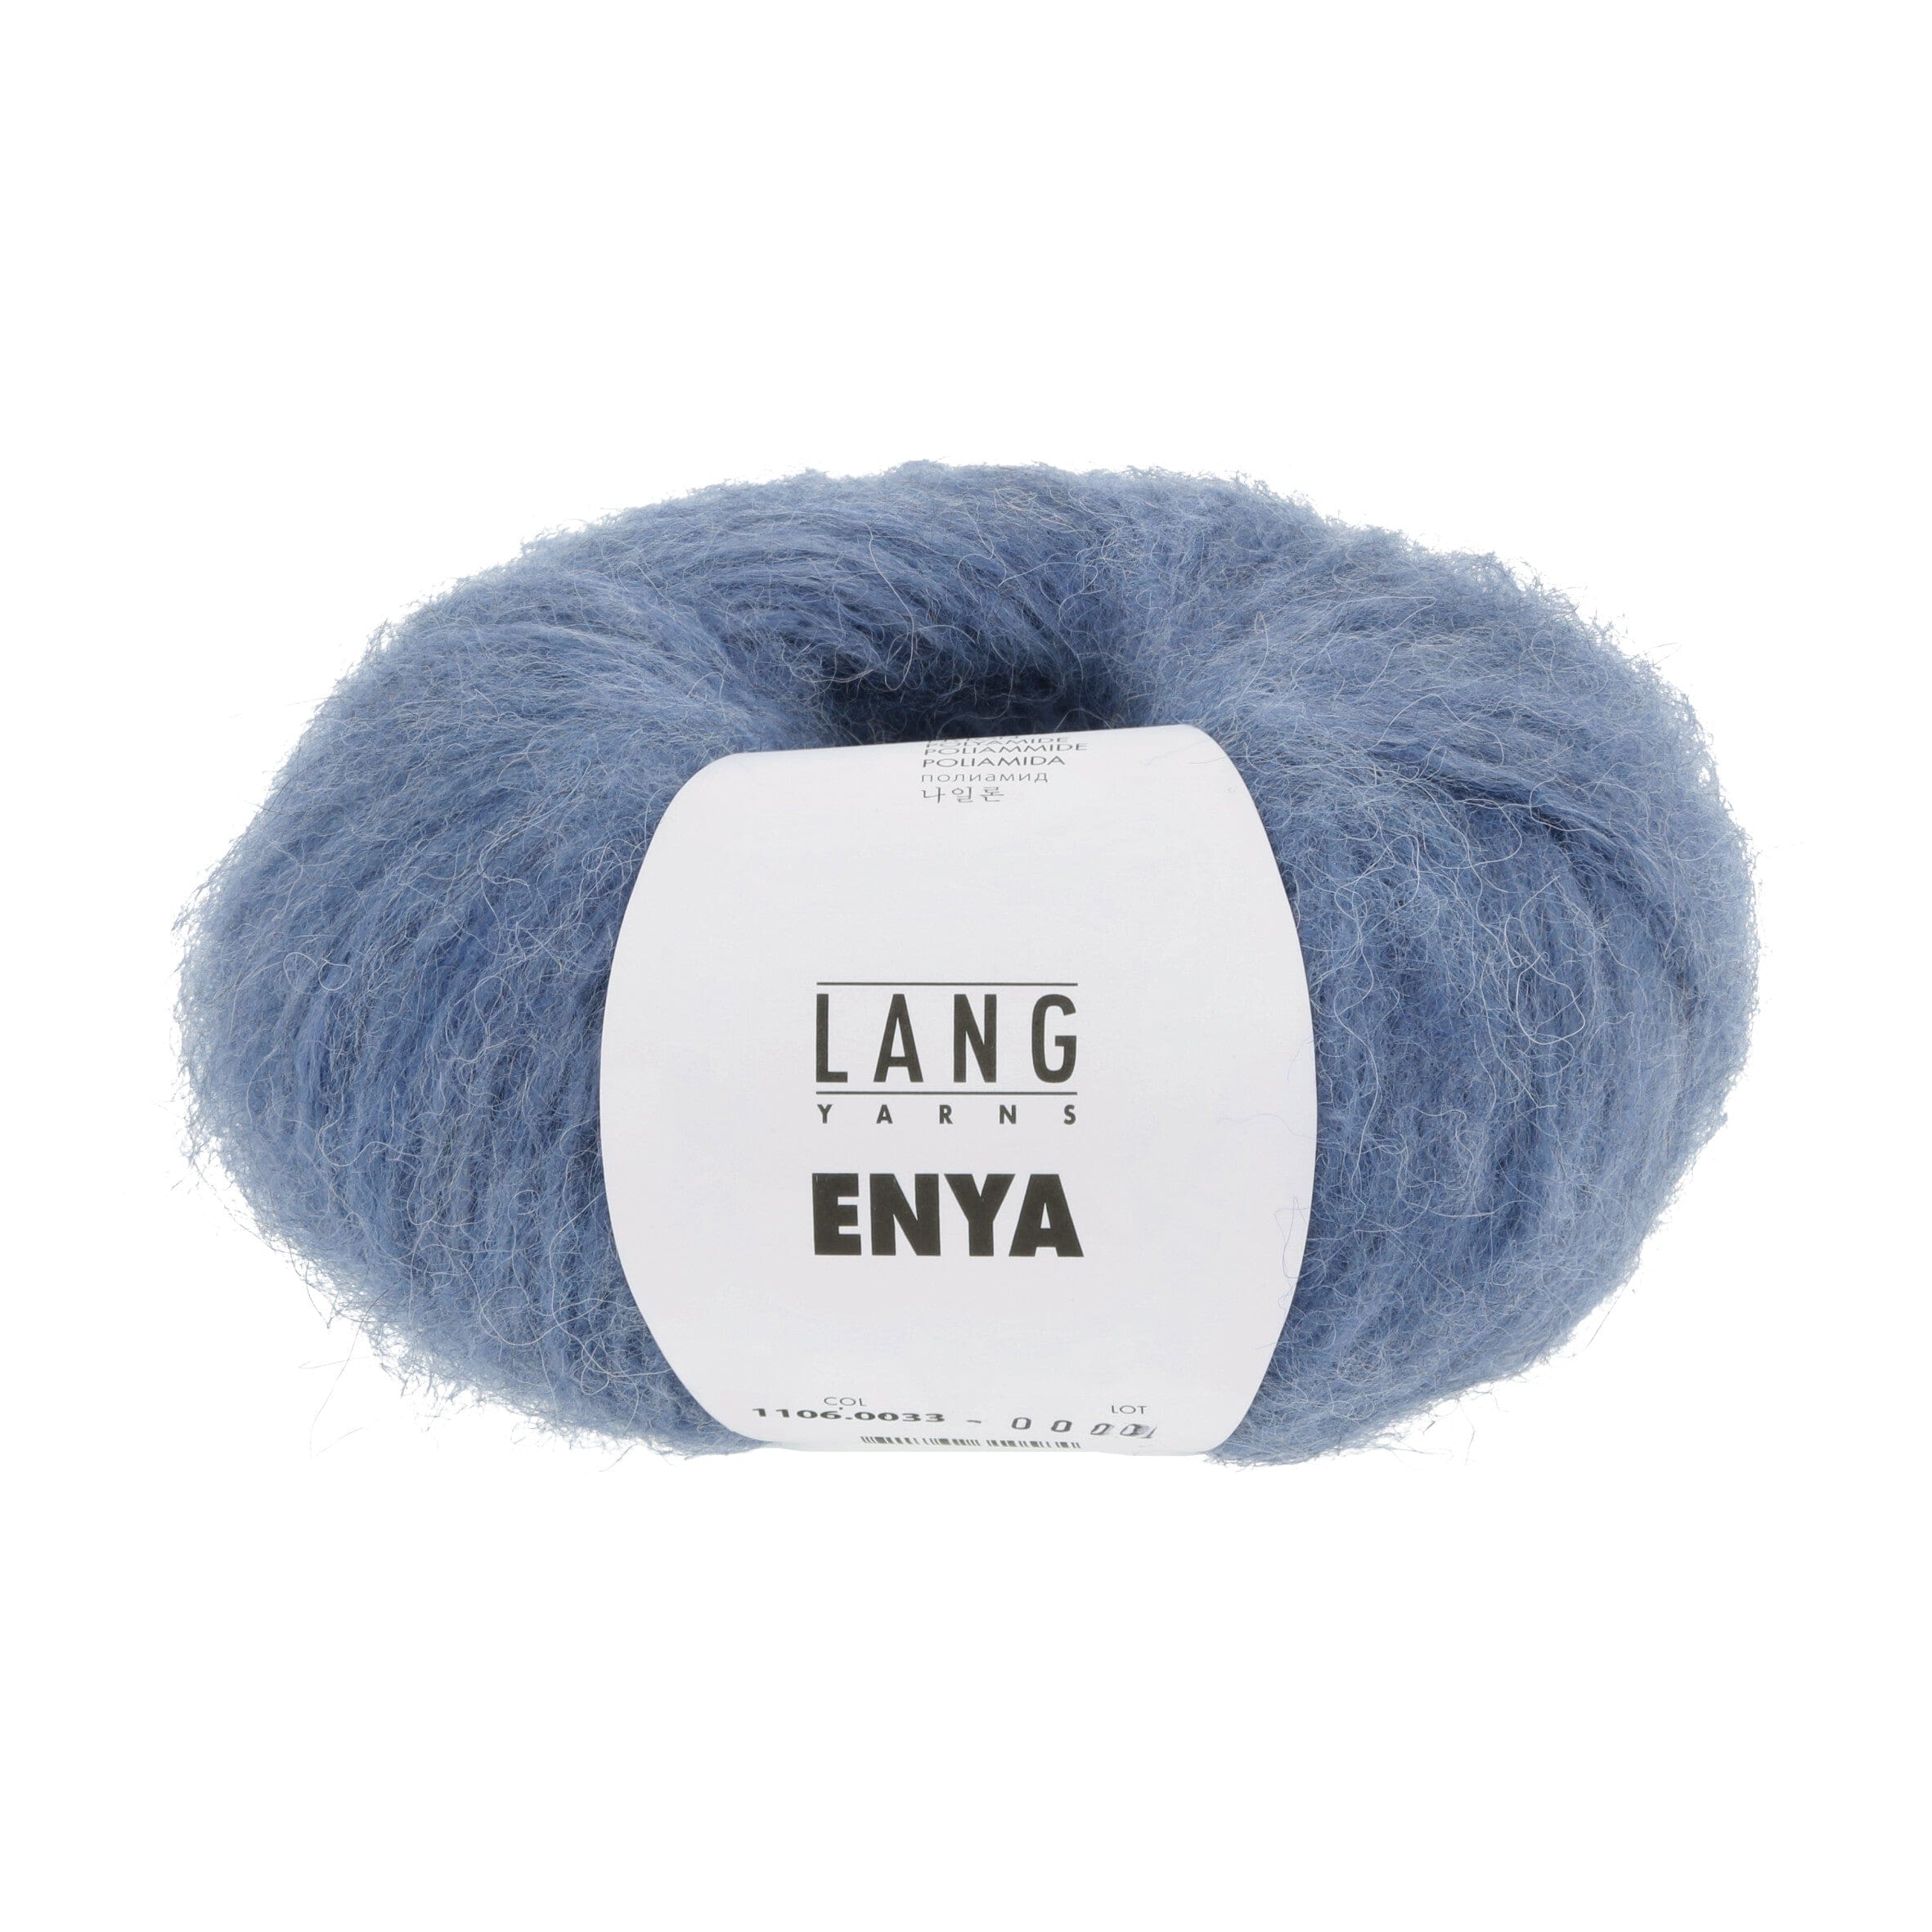 ENYA von LANG YARNS jetzt online kaufen bei OONIQUE